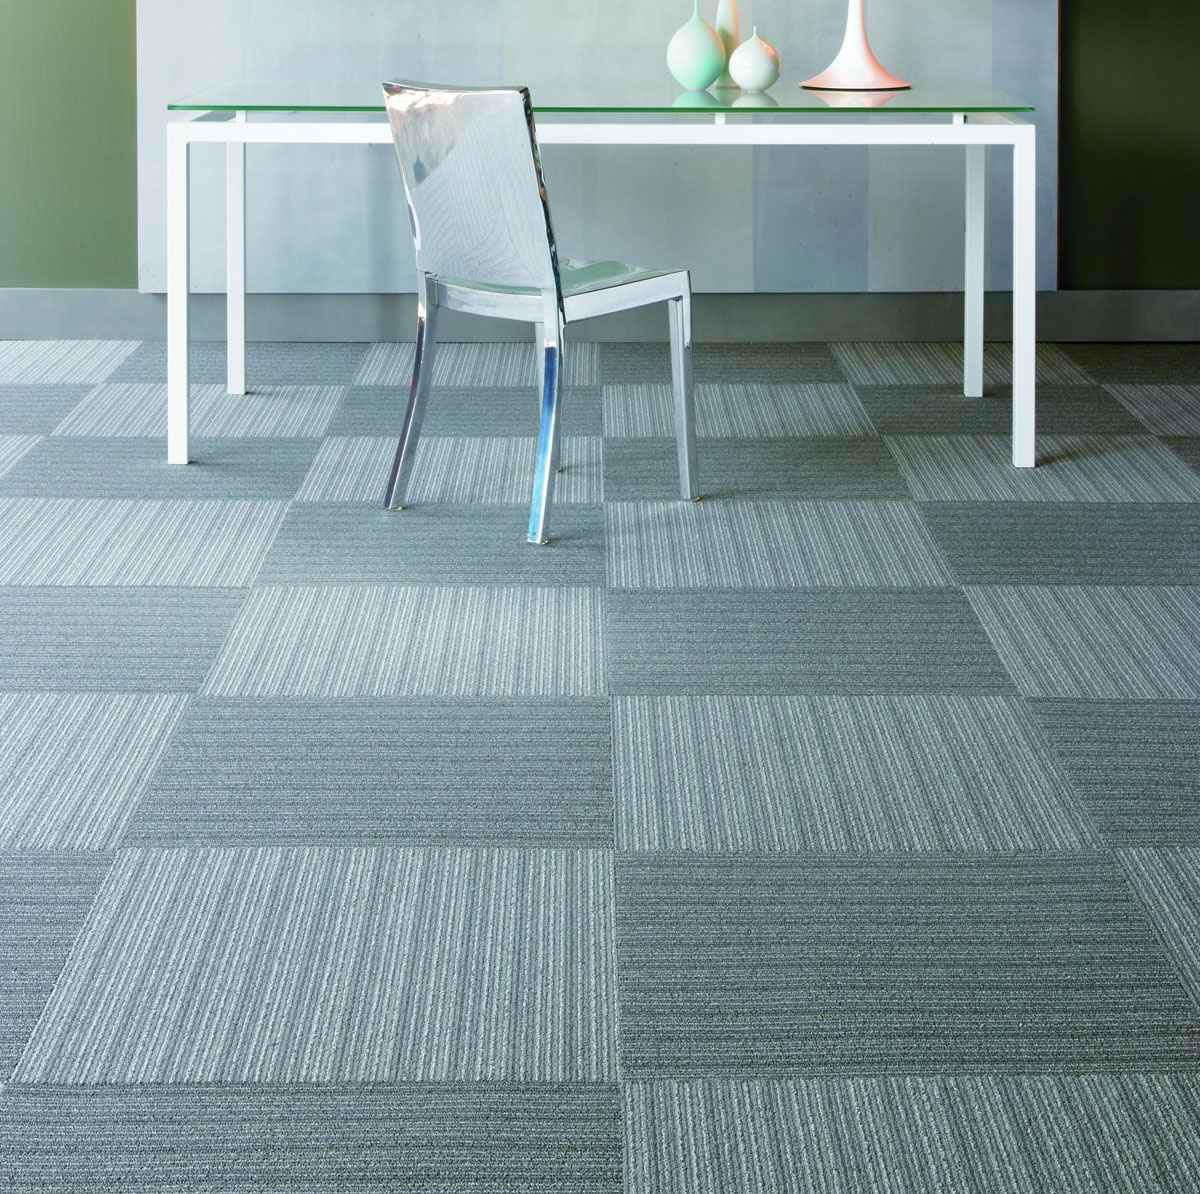 Carpet for Basement Floor